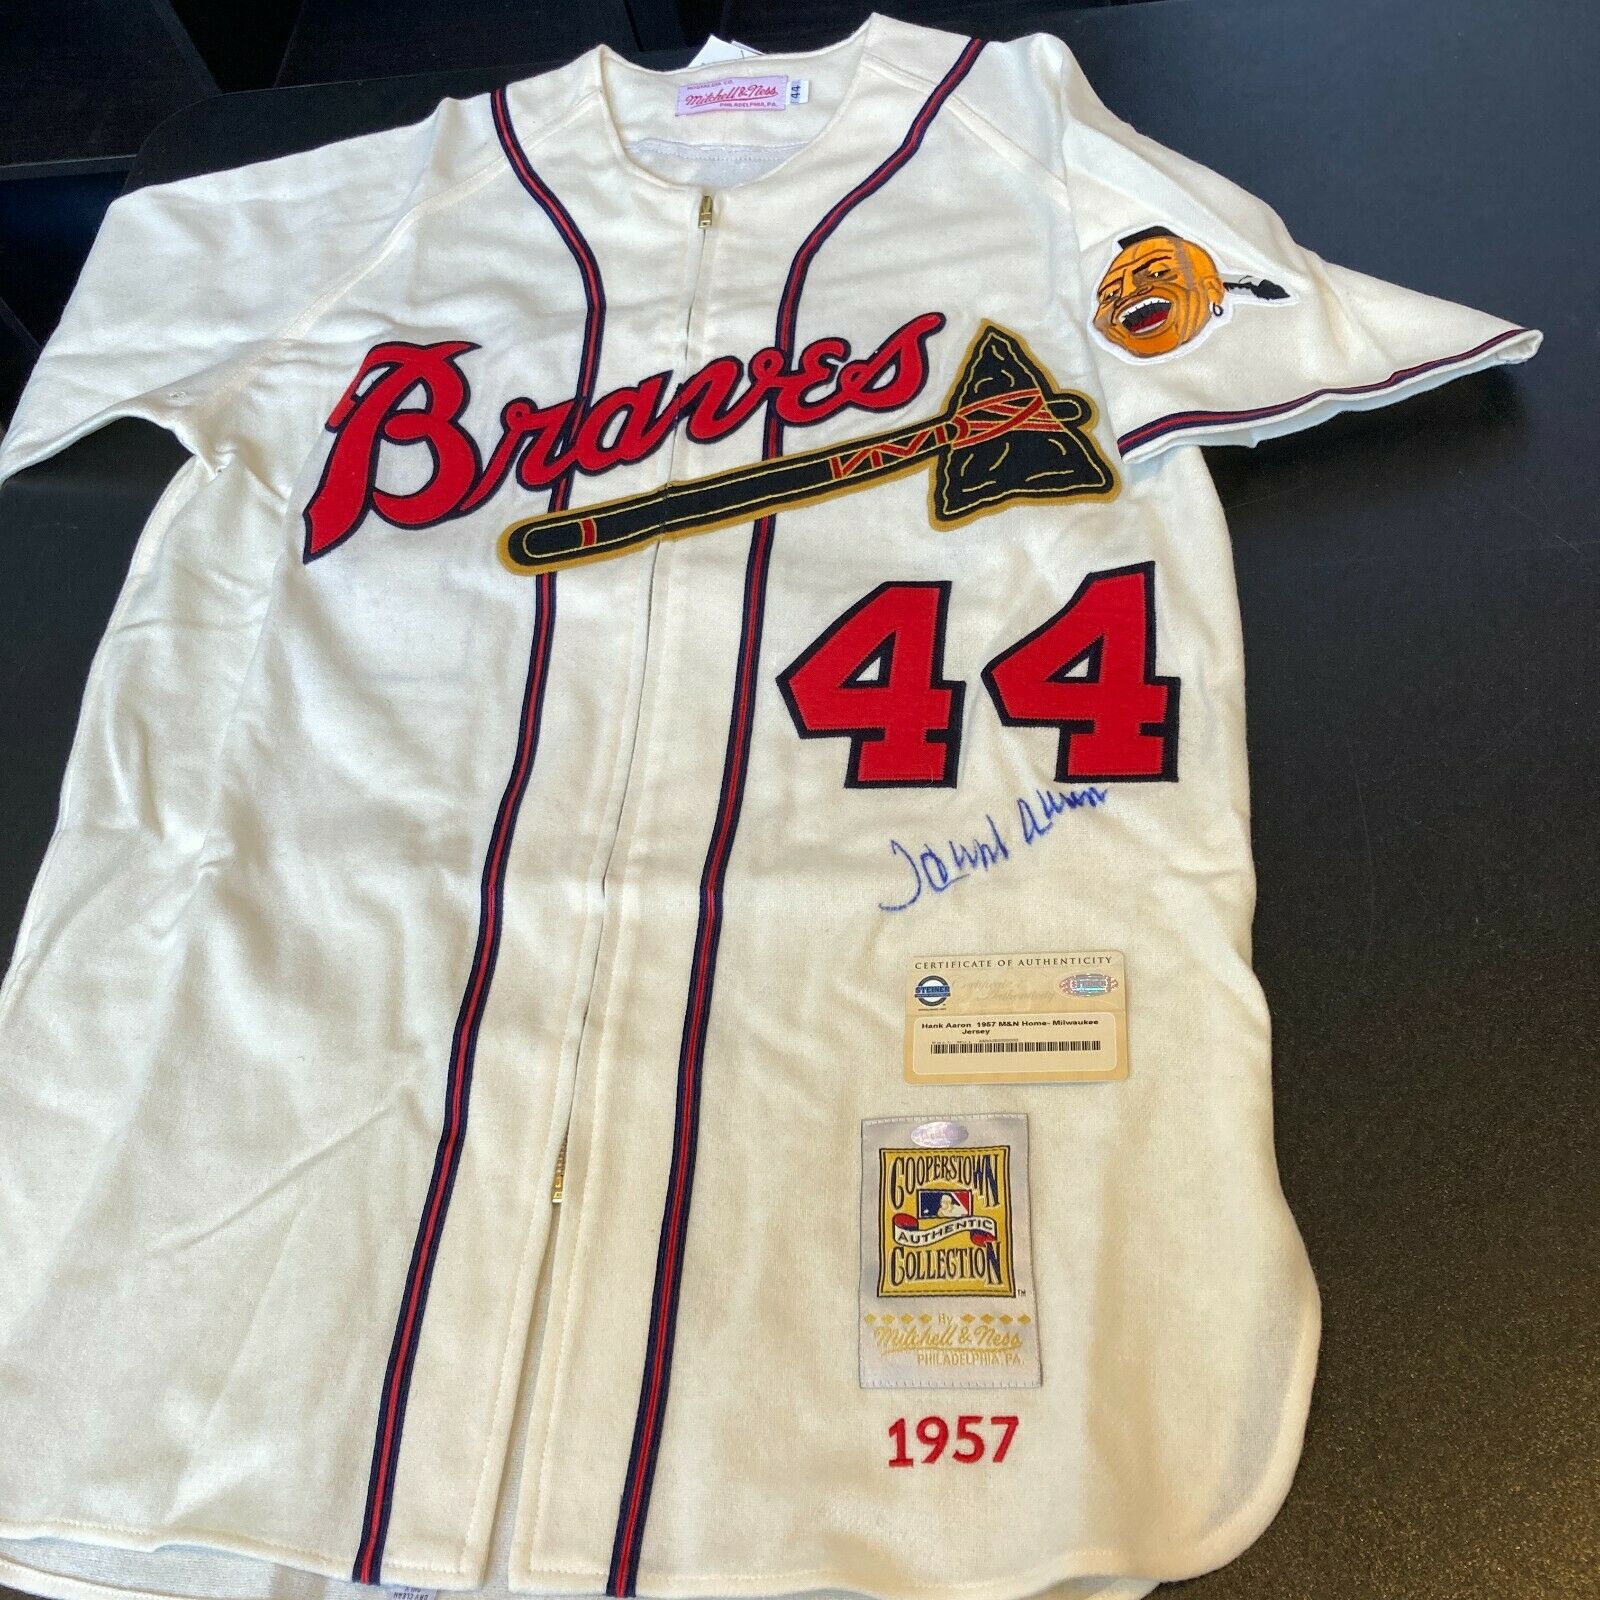 Hank Aaron Atlanta Milwaukee Braves Jersey – Classic Authentics